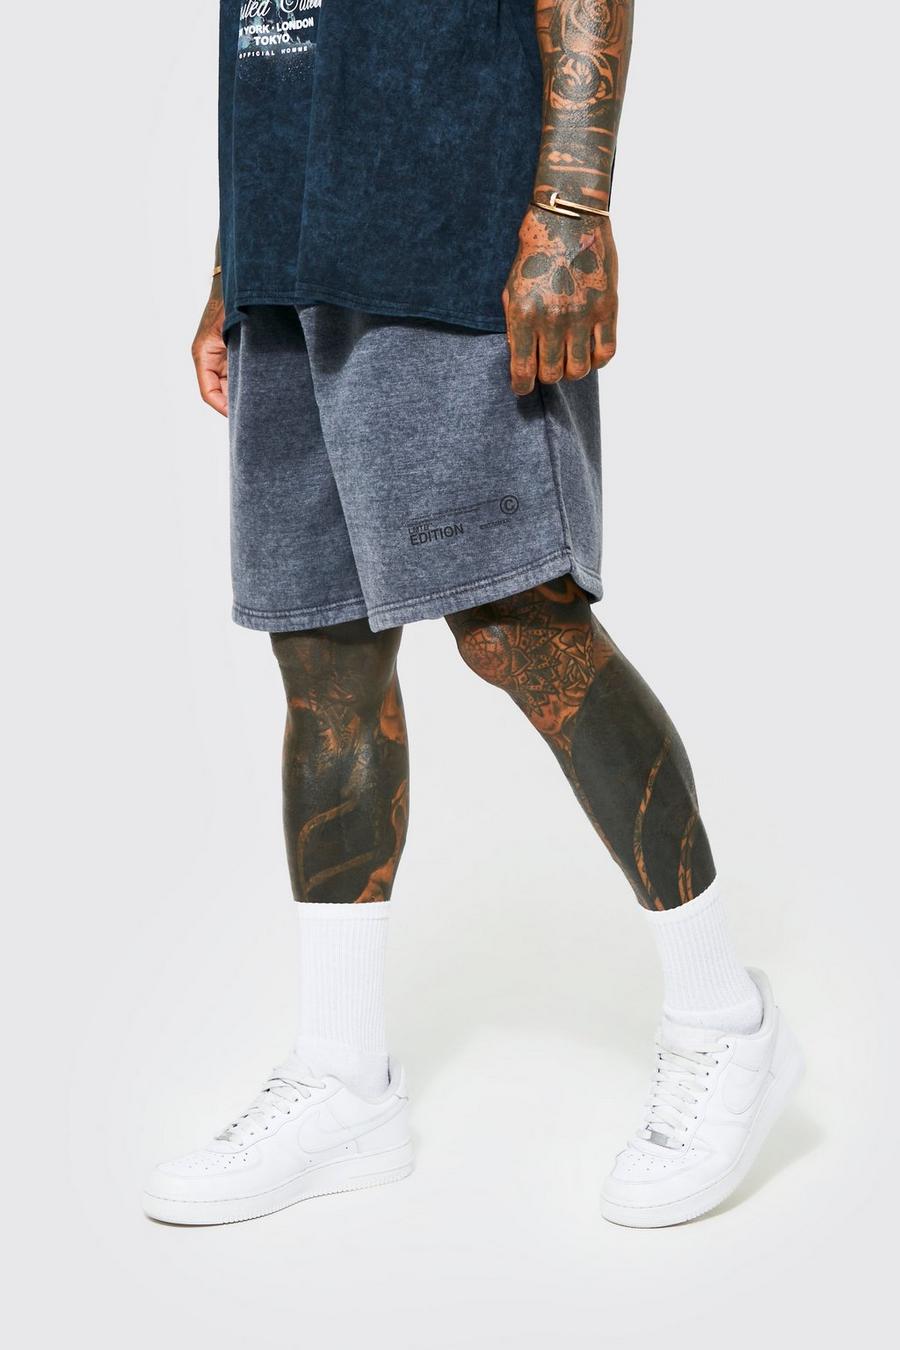 Pantalón corto oversize de tela jersey desteñido, Charcoal gris